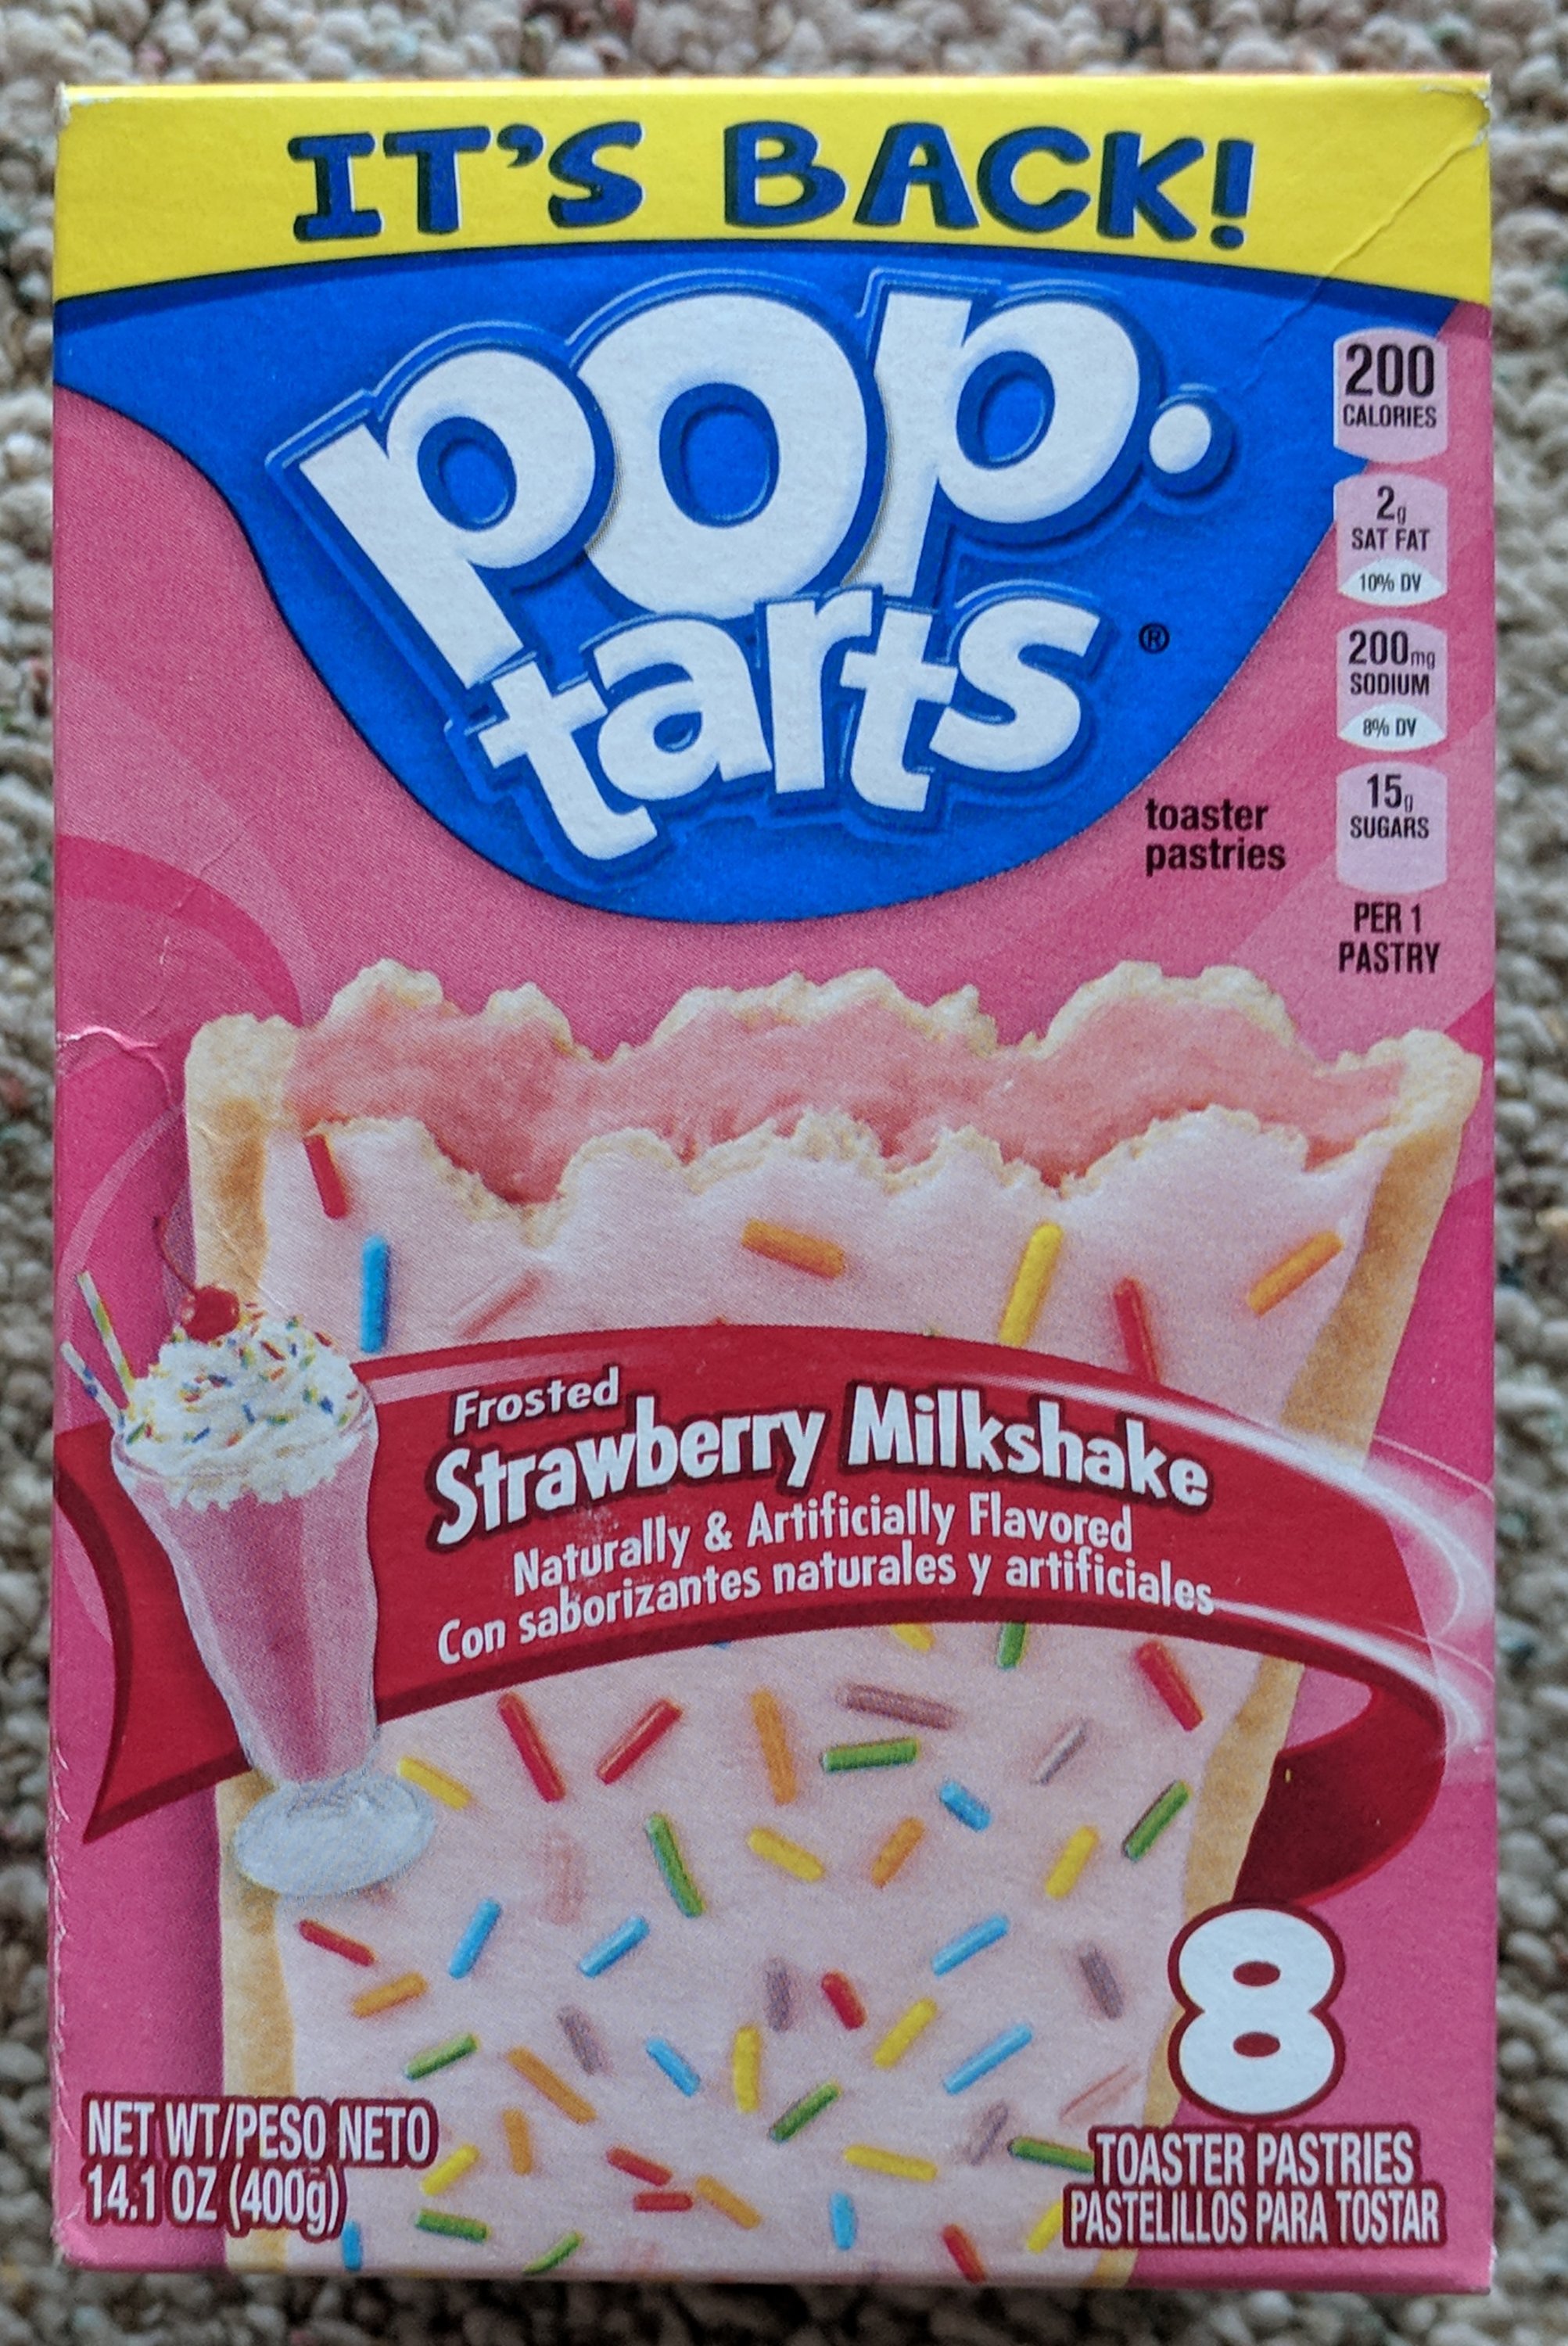 Pop-Tarts Brings Back Strawberry Milkshake Flavor